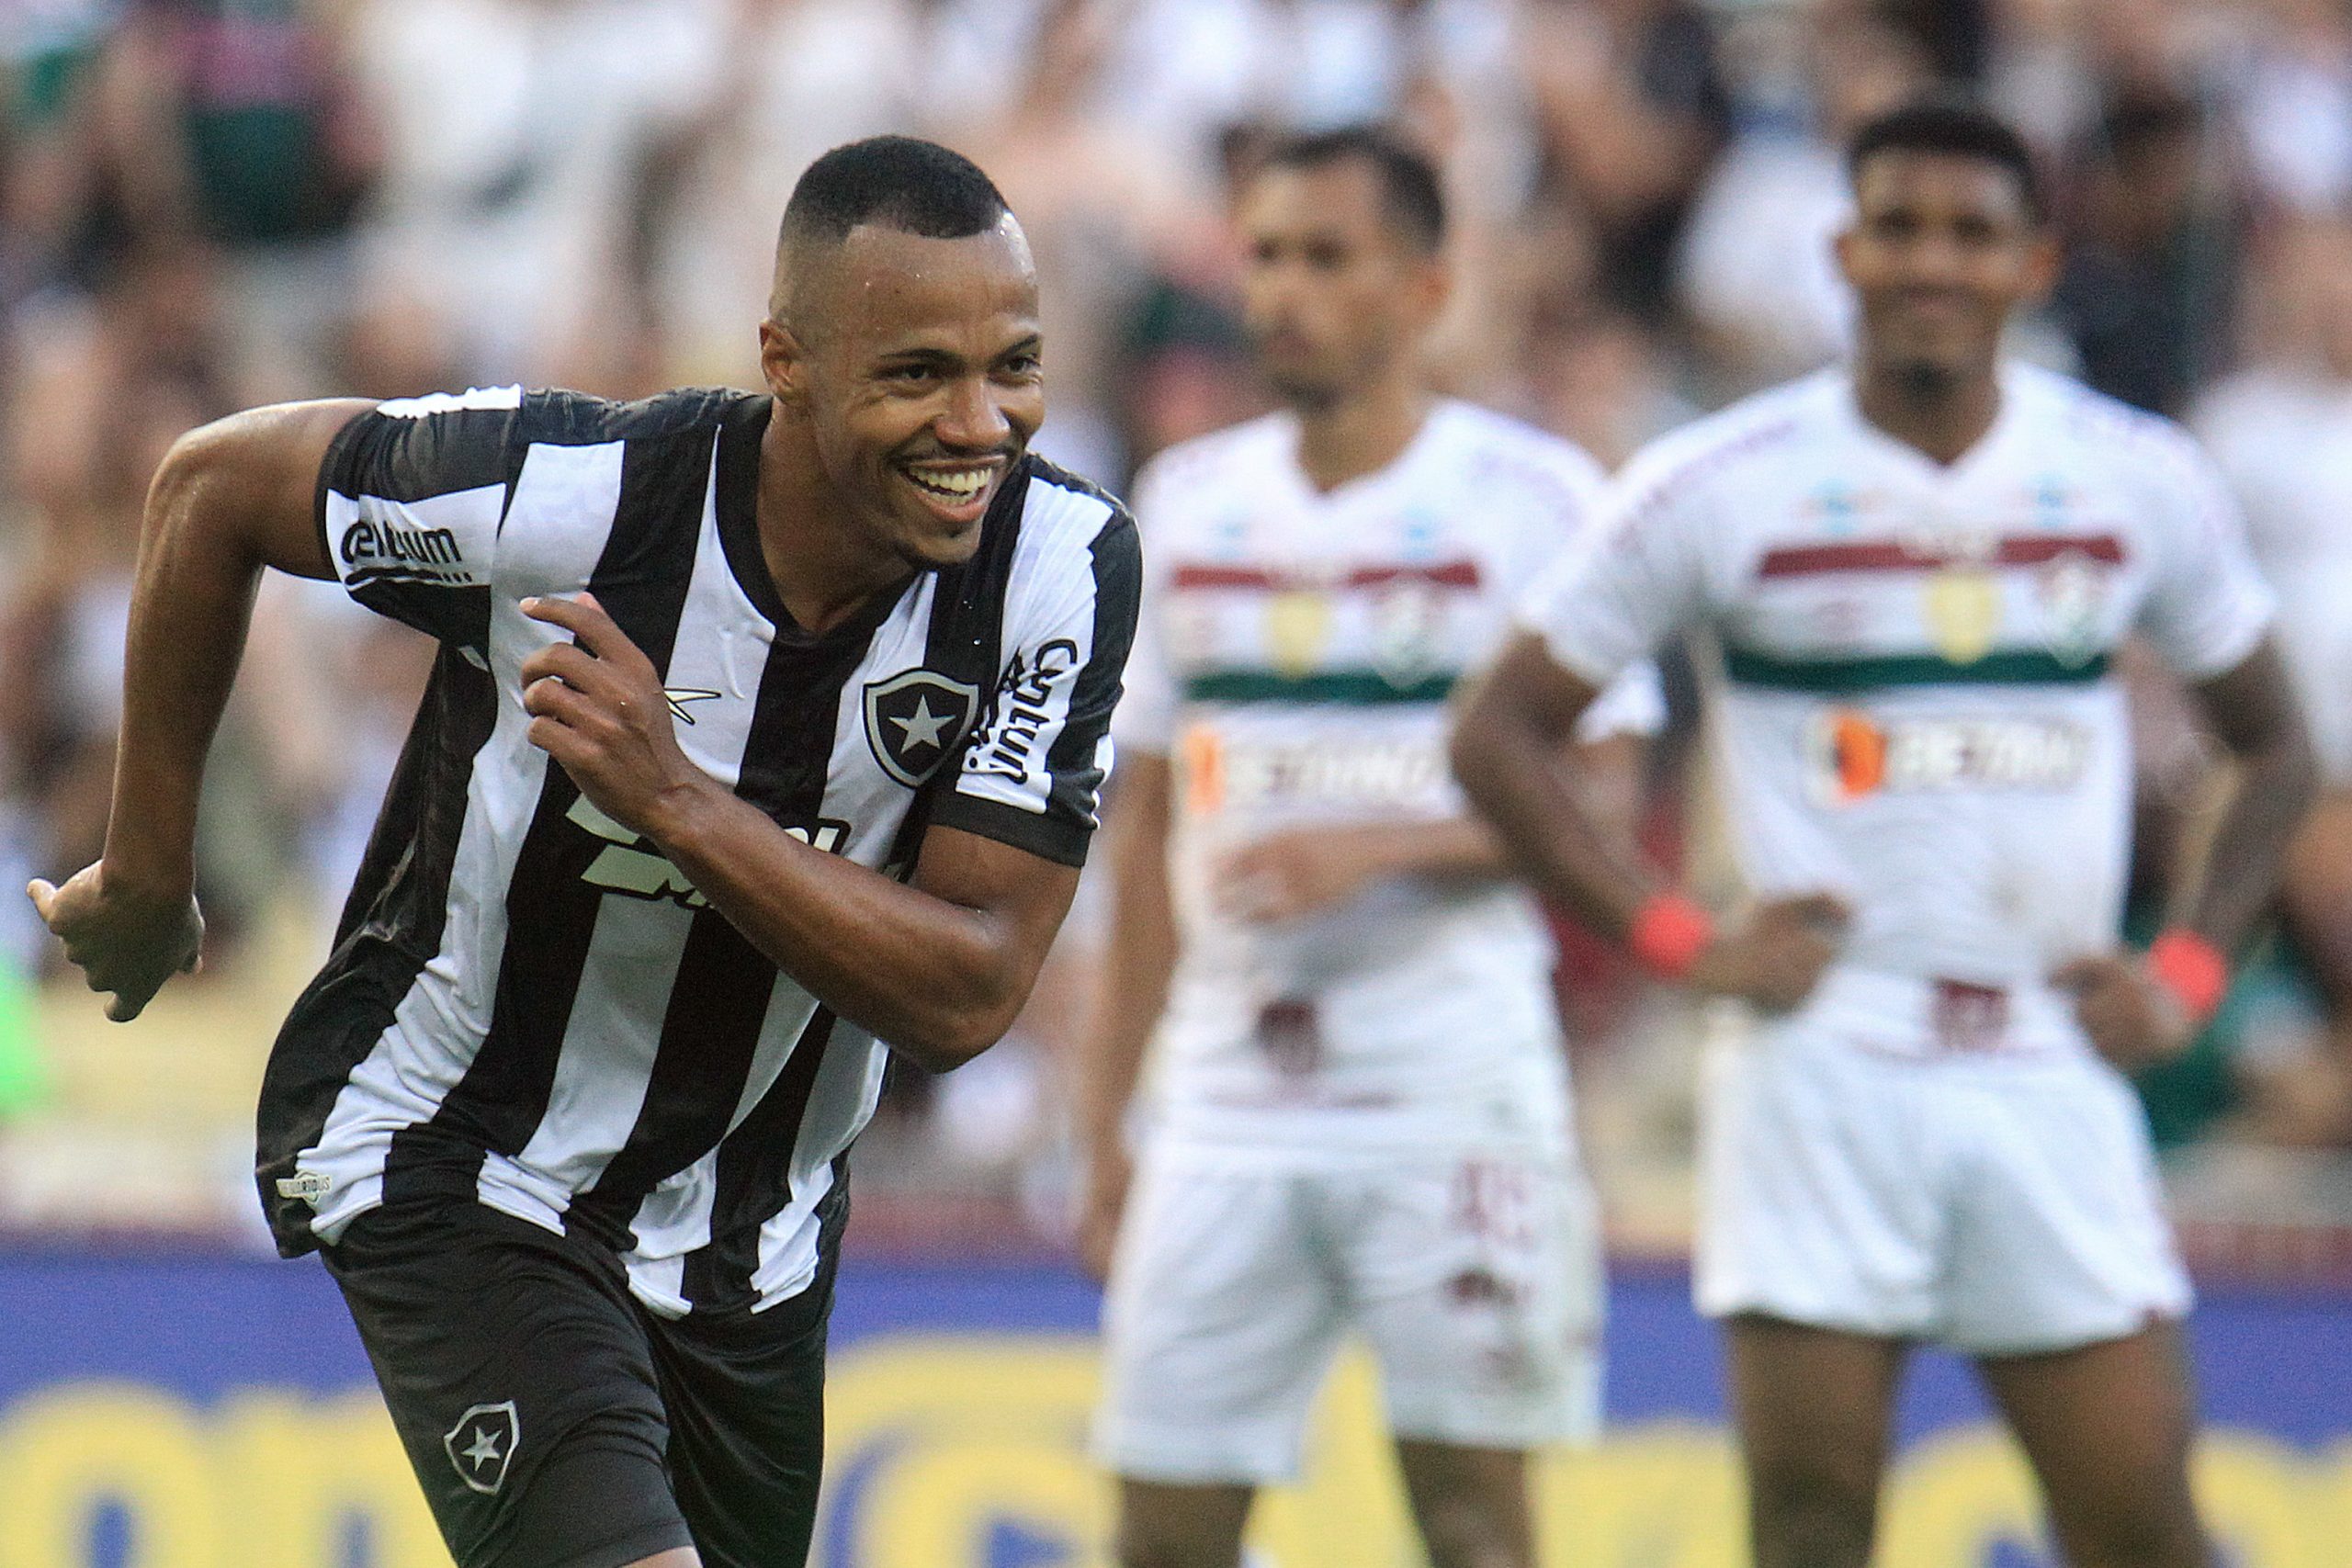 Marlon Freitas comemorando o terceiro gol do Botafogo. (Foto:Foto: Vitor Silva/Botafogo)